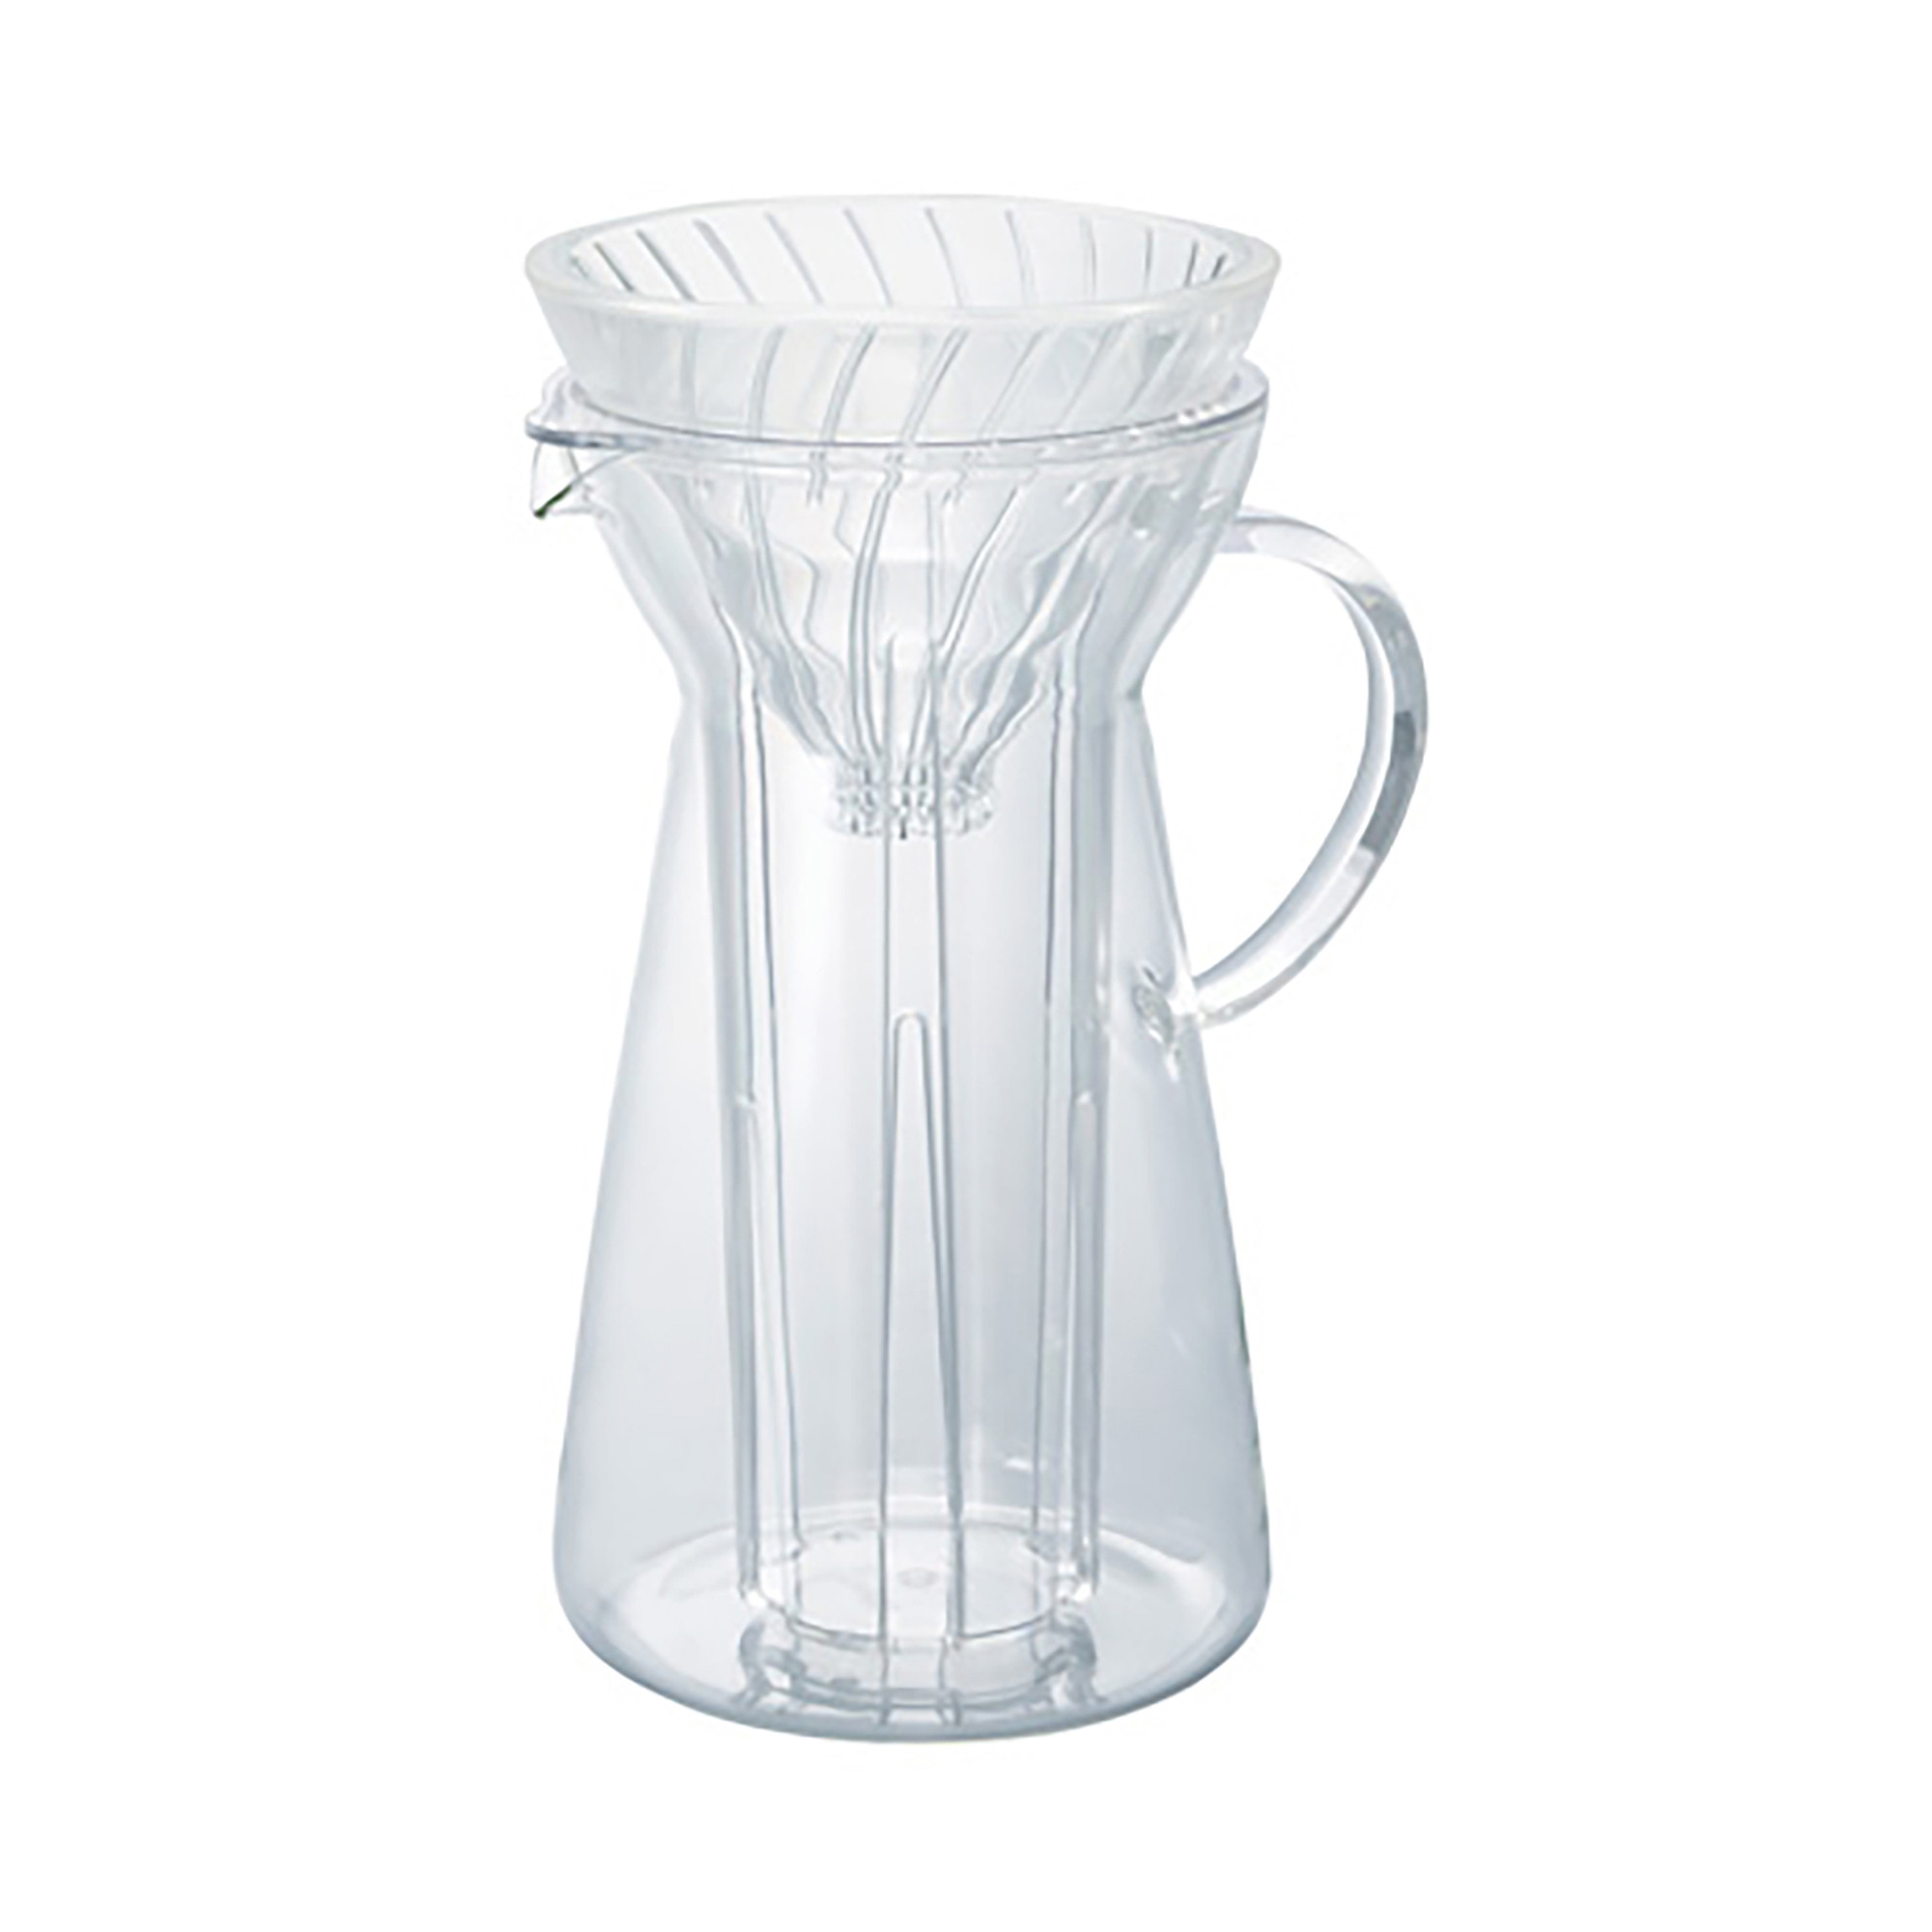 Iskaffebrygger V60, glas - 700 ml